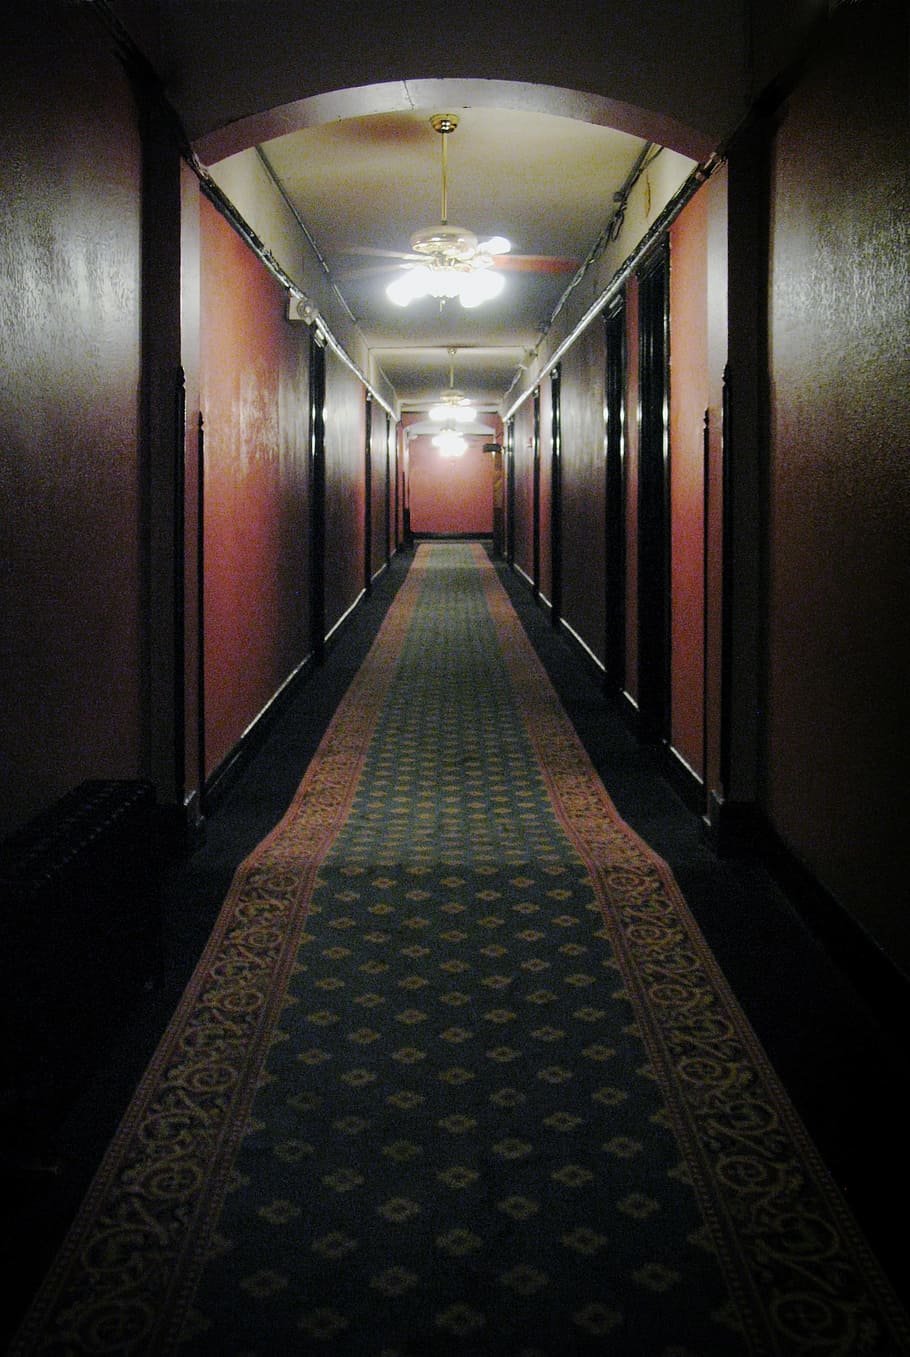 bege, verde, tapete do corredor, Corredor, Hotel, Assustador, Assombrado, fantasmas, vintage, retrô